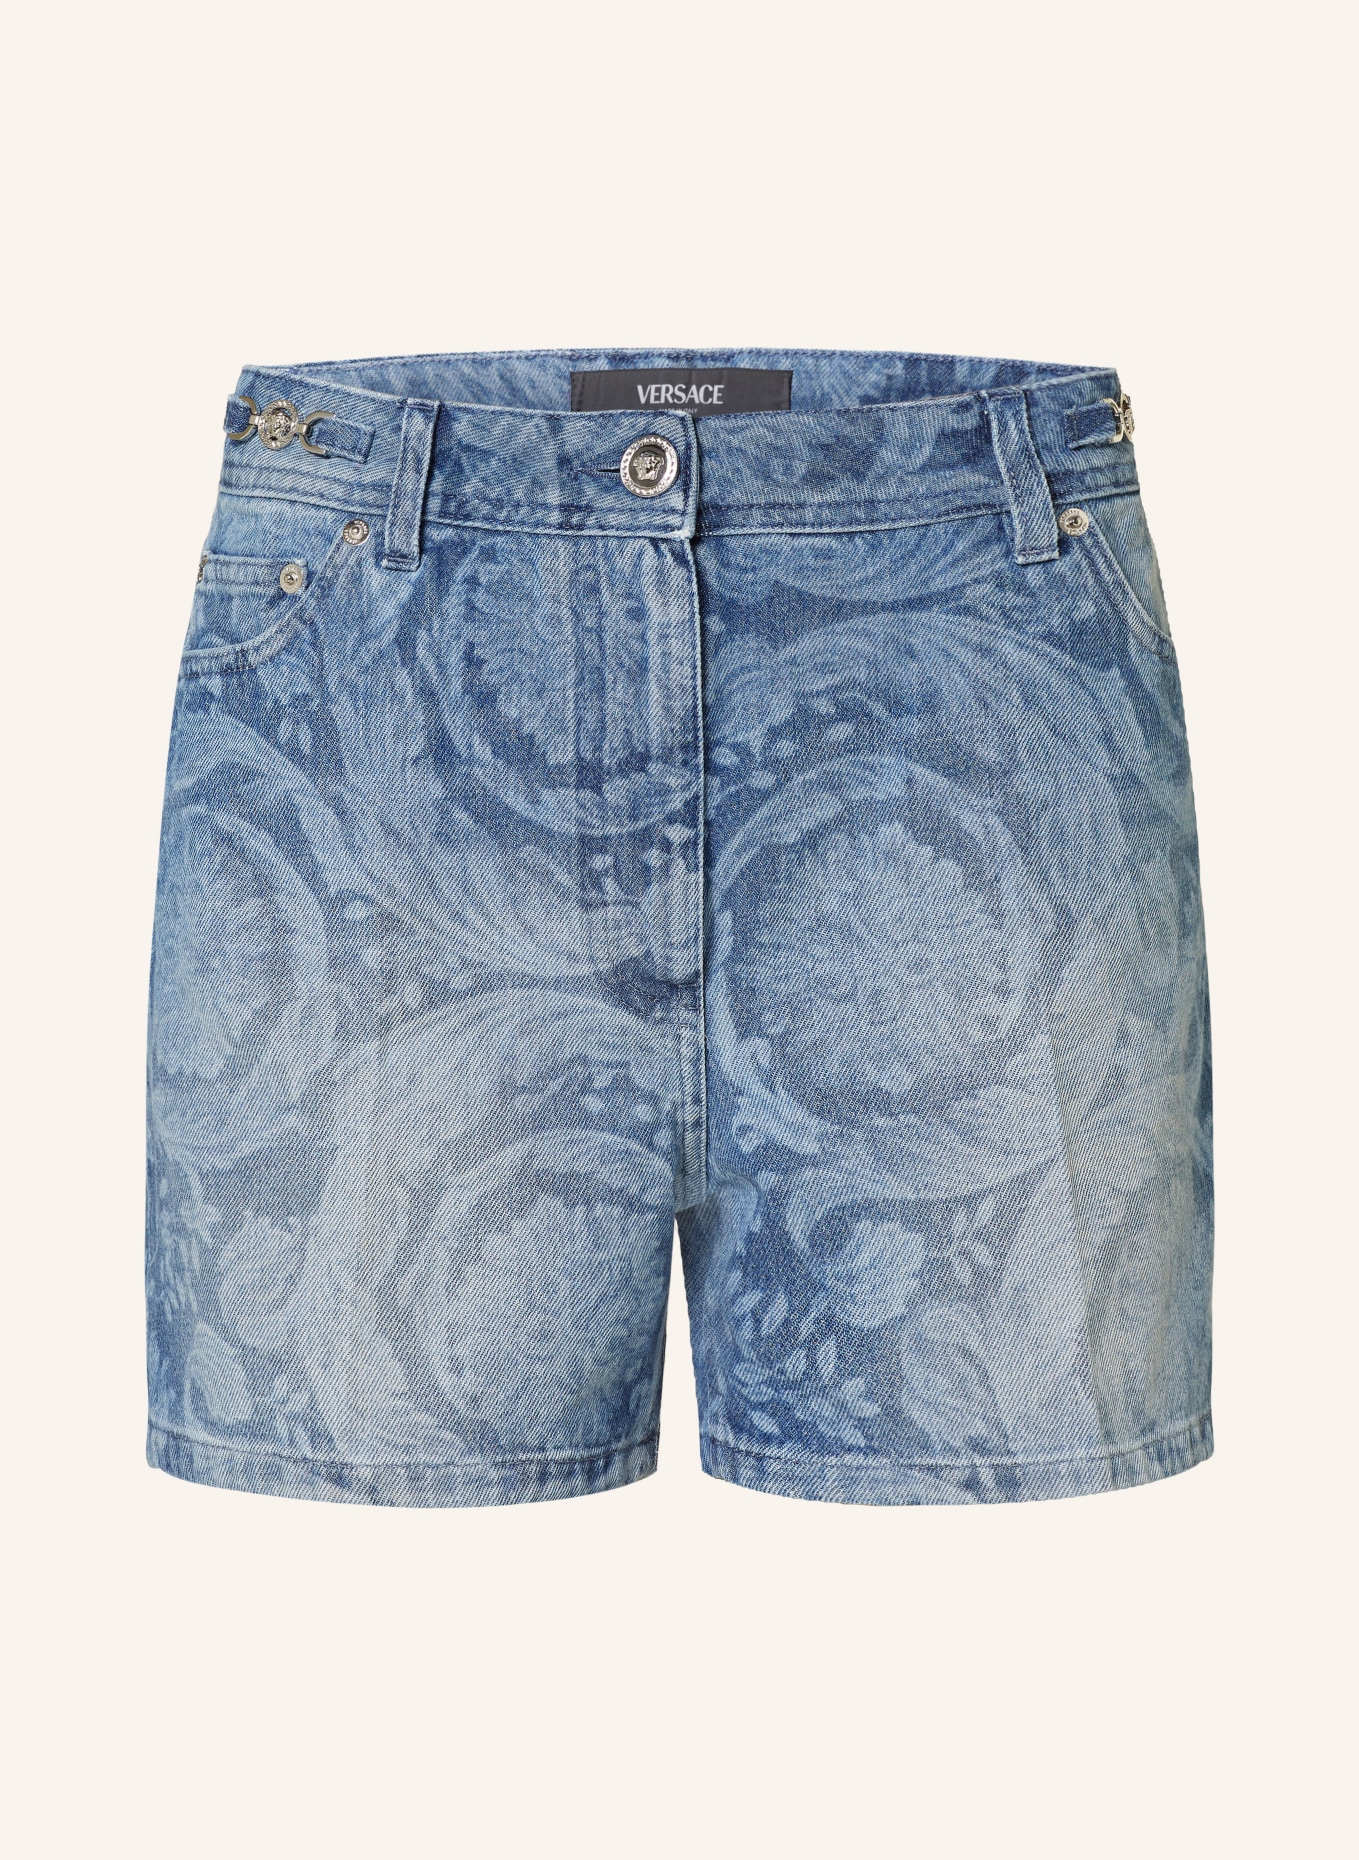 VERSACE Denim shorts, Color: BLUE (Image 1)